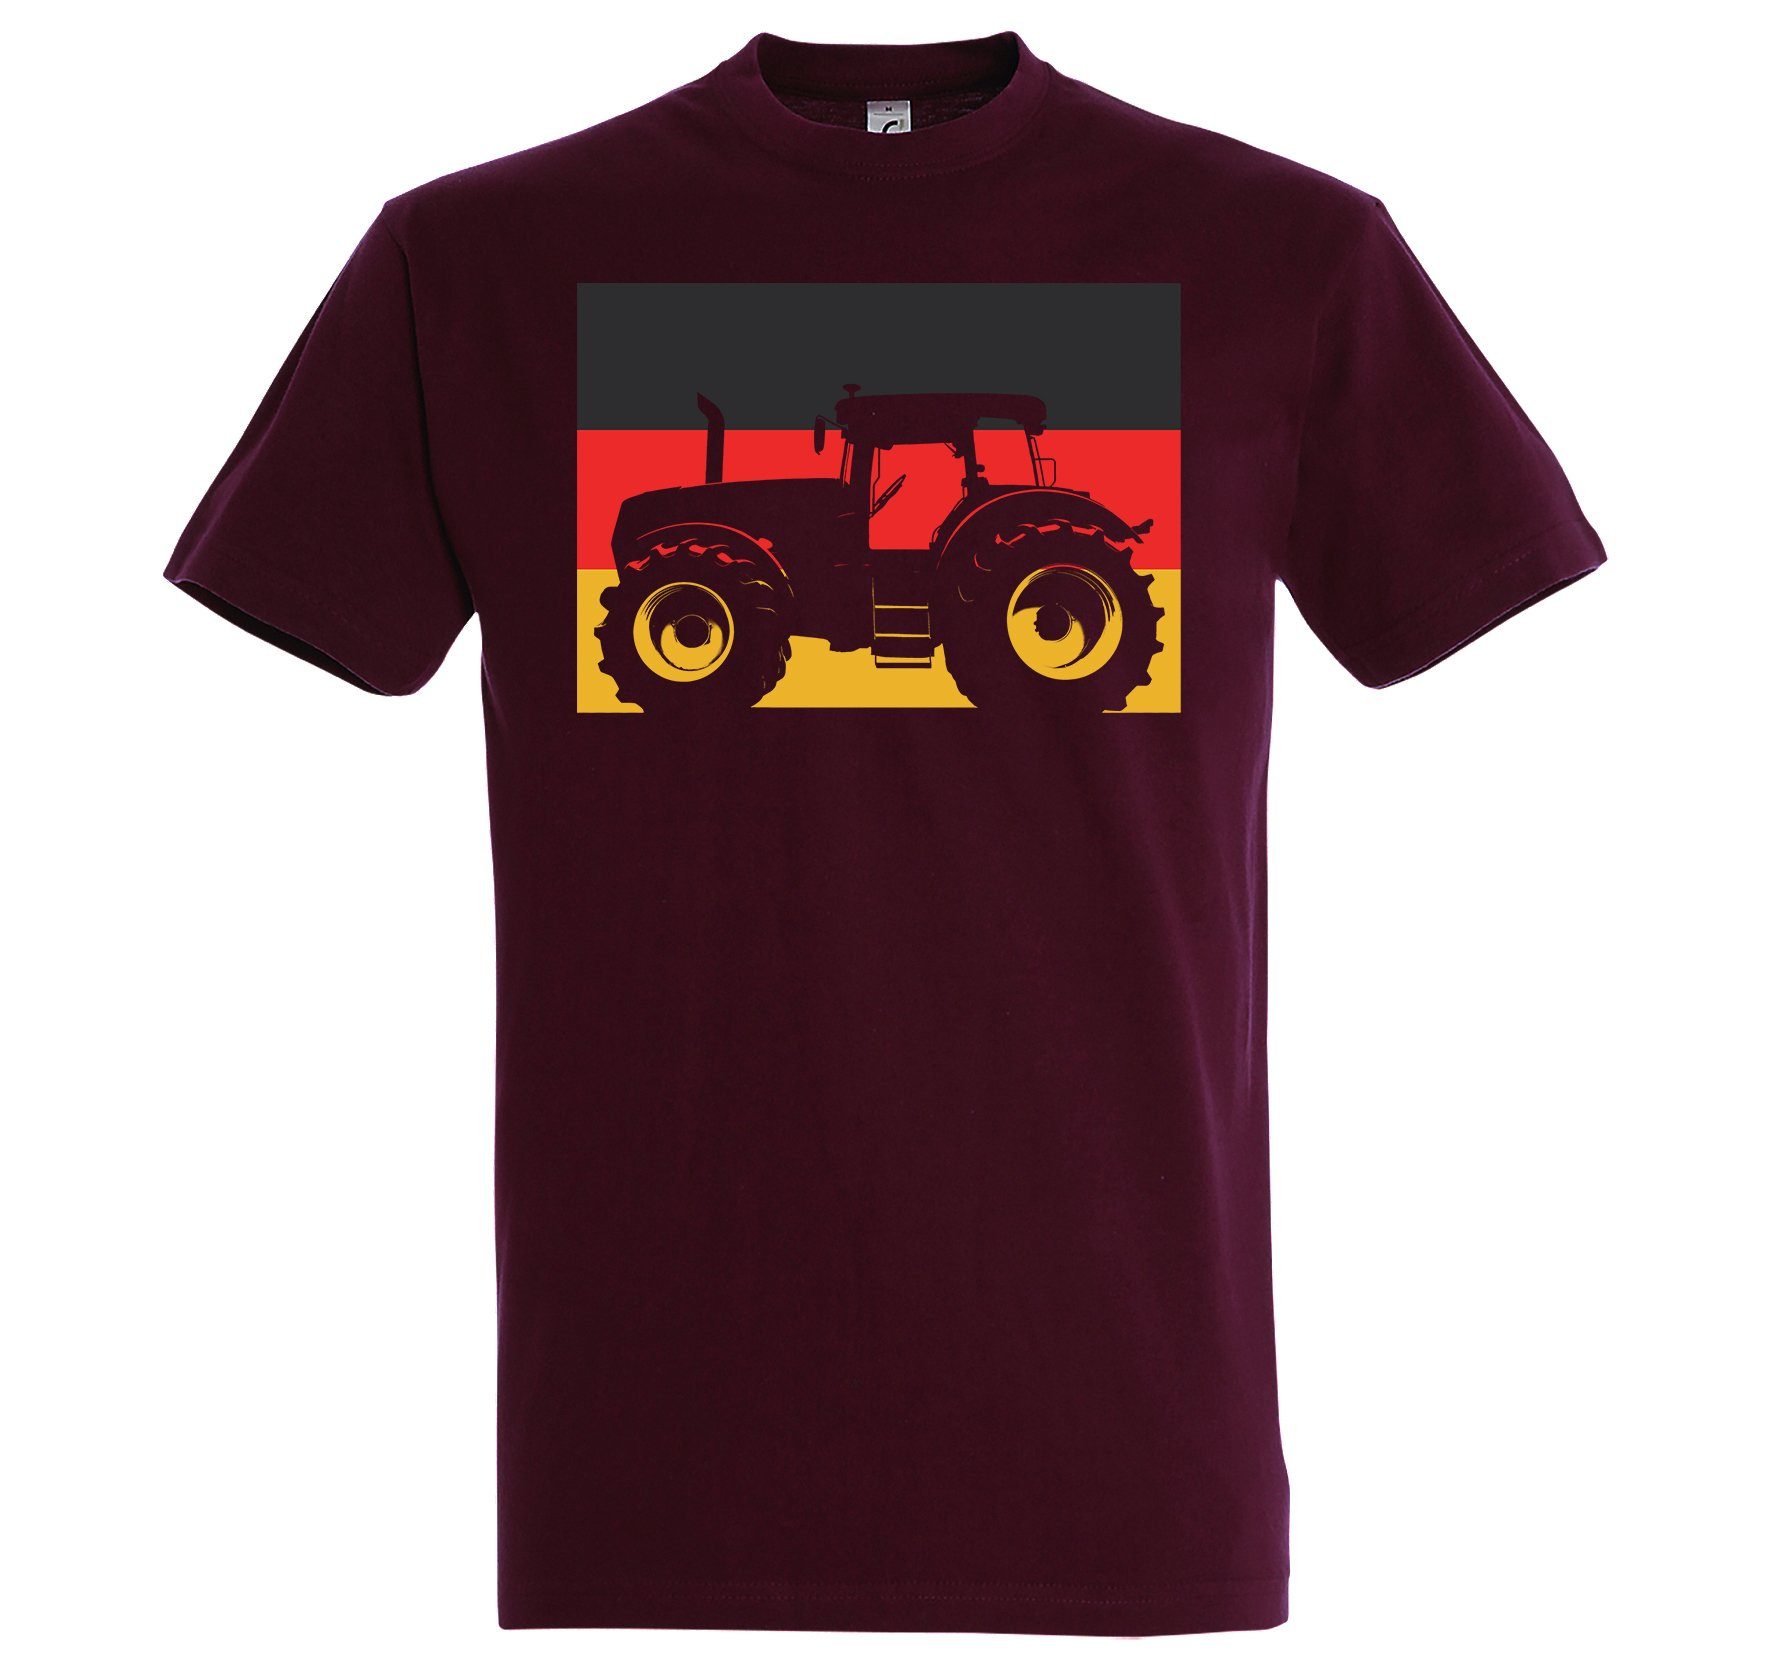 Burgund T-Shirt Herren T-Shirt lustigem Deutschland Youth Traktor mit Designz Spruch